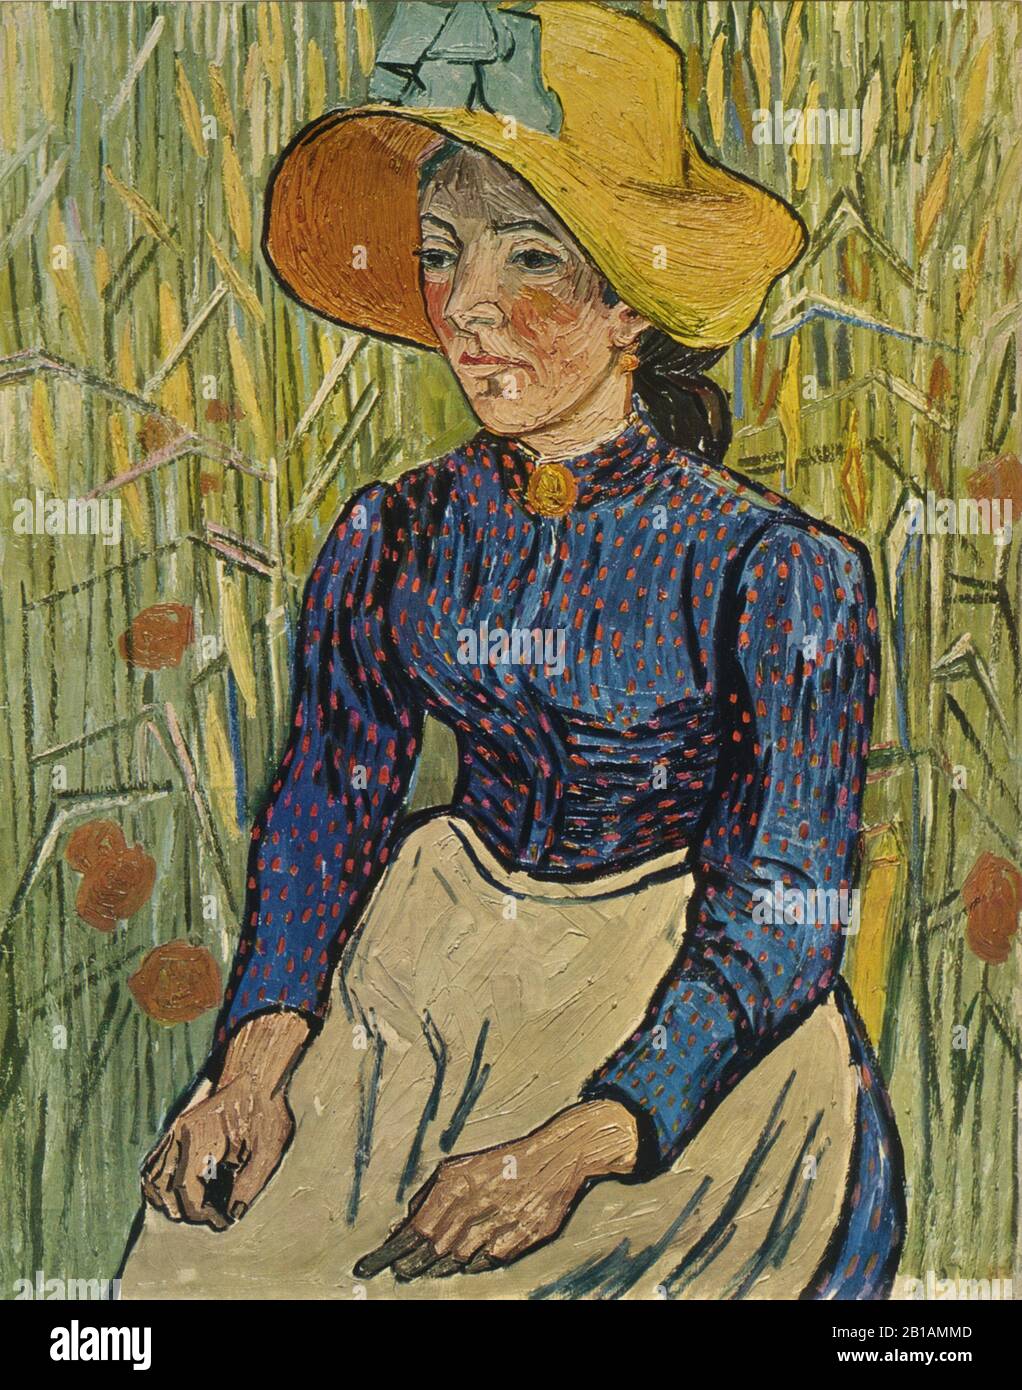 Pittura contadina ragazza 1890 di Vincent van Gogh - Immagine Di Alta risoluzione e qualità Foto Stock